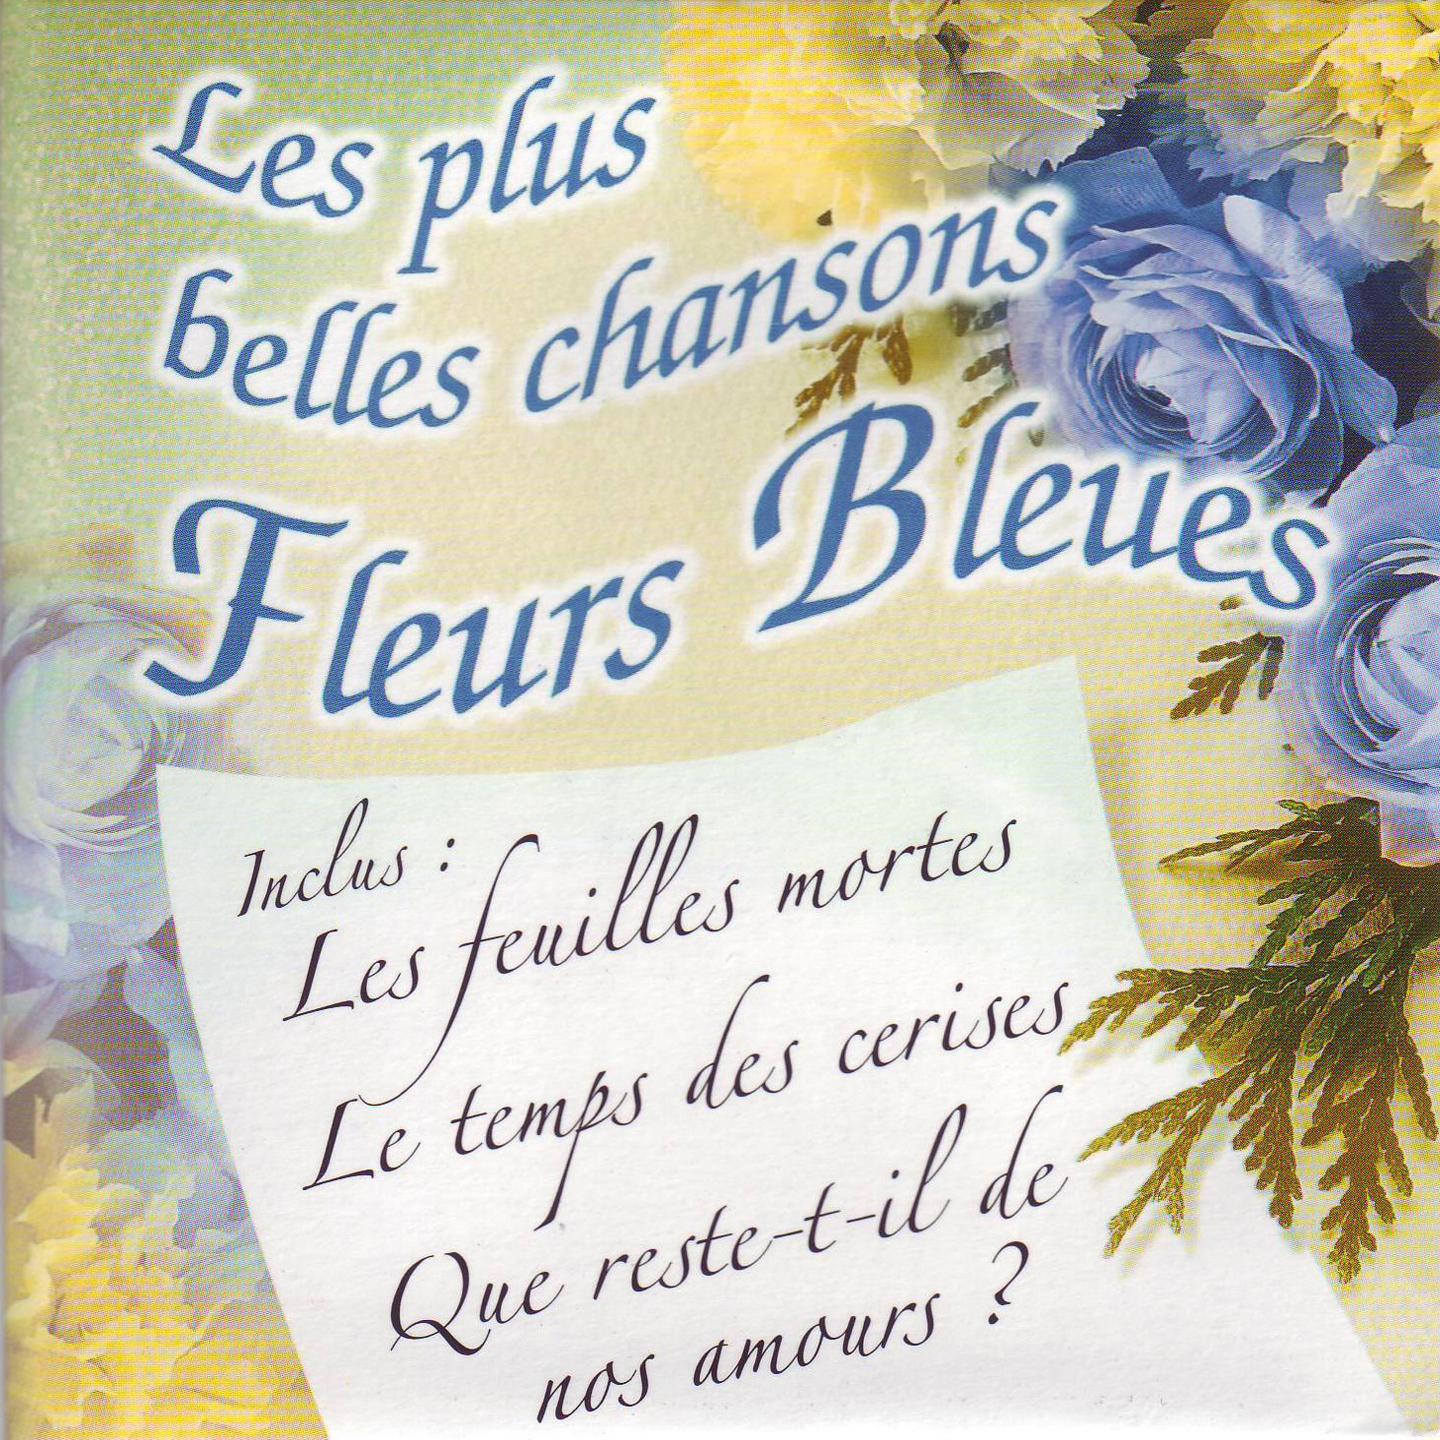 Les plus belles chansons fleurs bleues